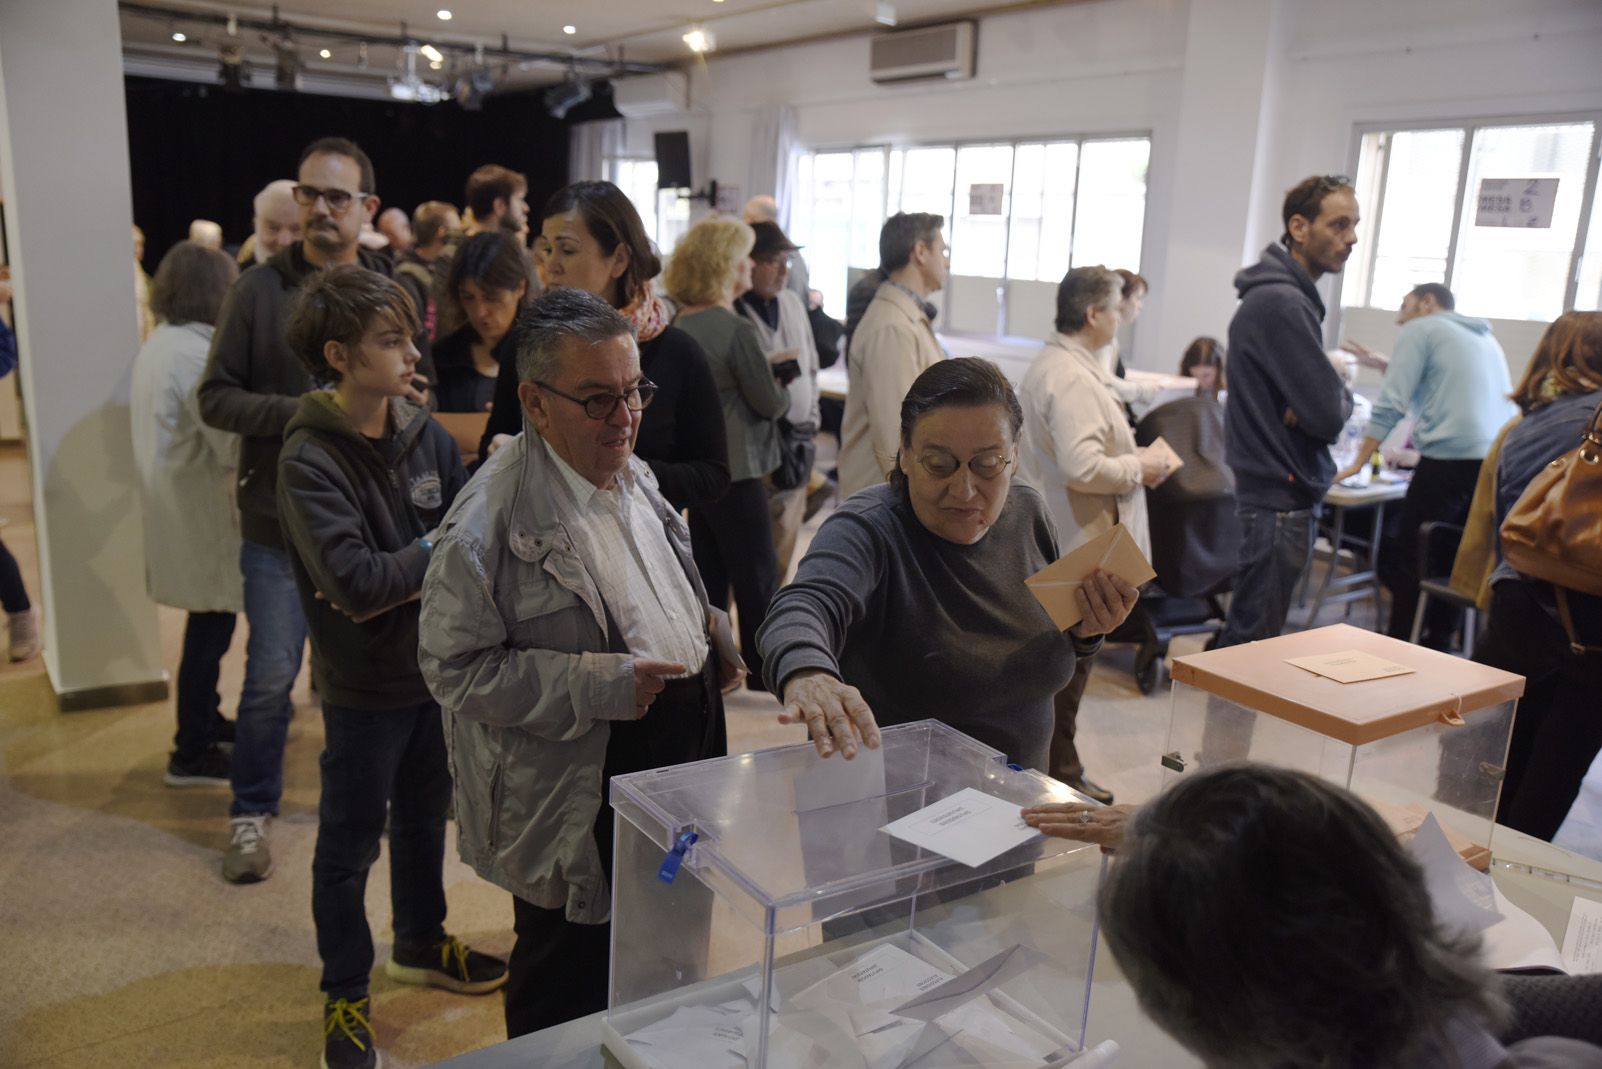 Votants al Casal de Cultura de Sant Cugat per les eleccions al congrés Espanyol. Foto: Bernat Millet.